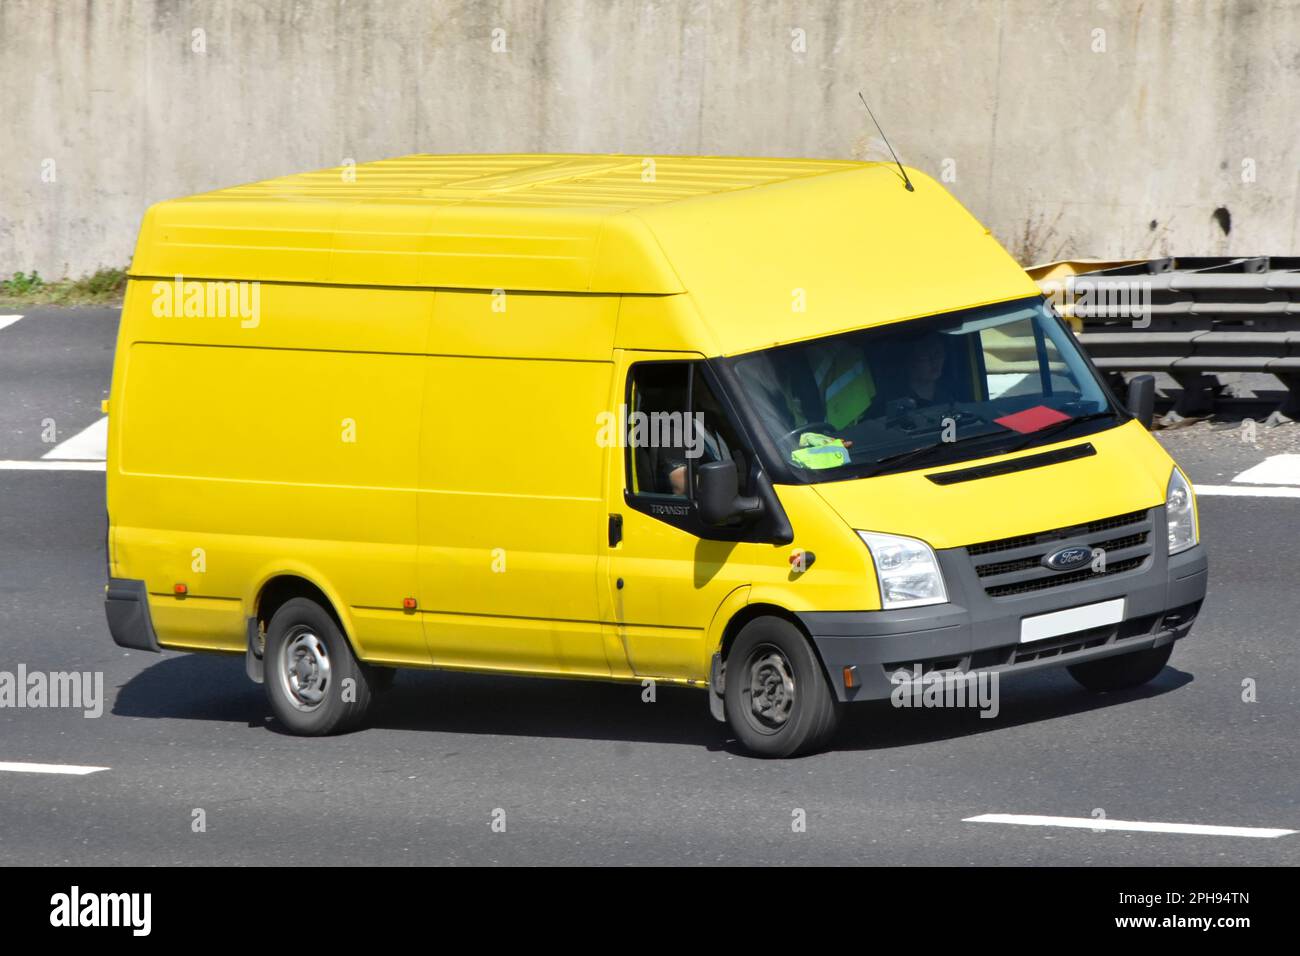 Conducteur d'un véhicule commercial dans une vue latérale et avant d'une fourgonnette jaune Ford Transit à toit surélevé propre et non marquée conduisant le long de la route d'autoroute M25 Essex Angleterre Royaume-Uni Banque D'Images